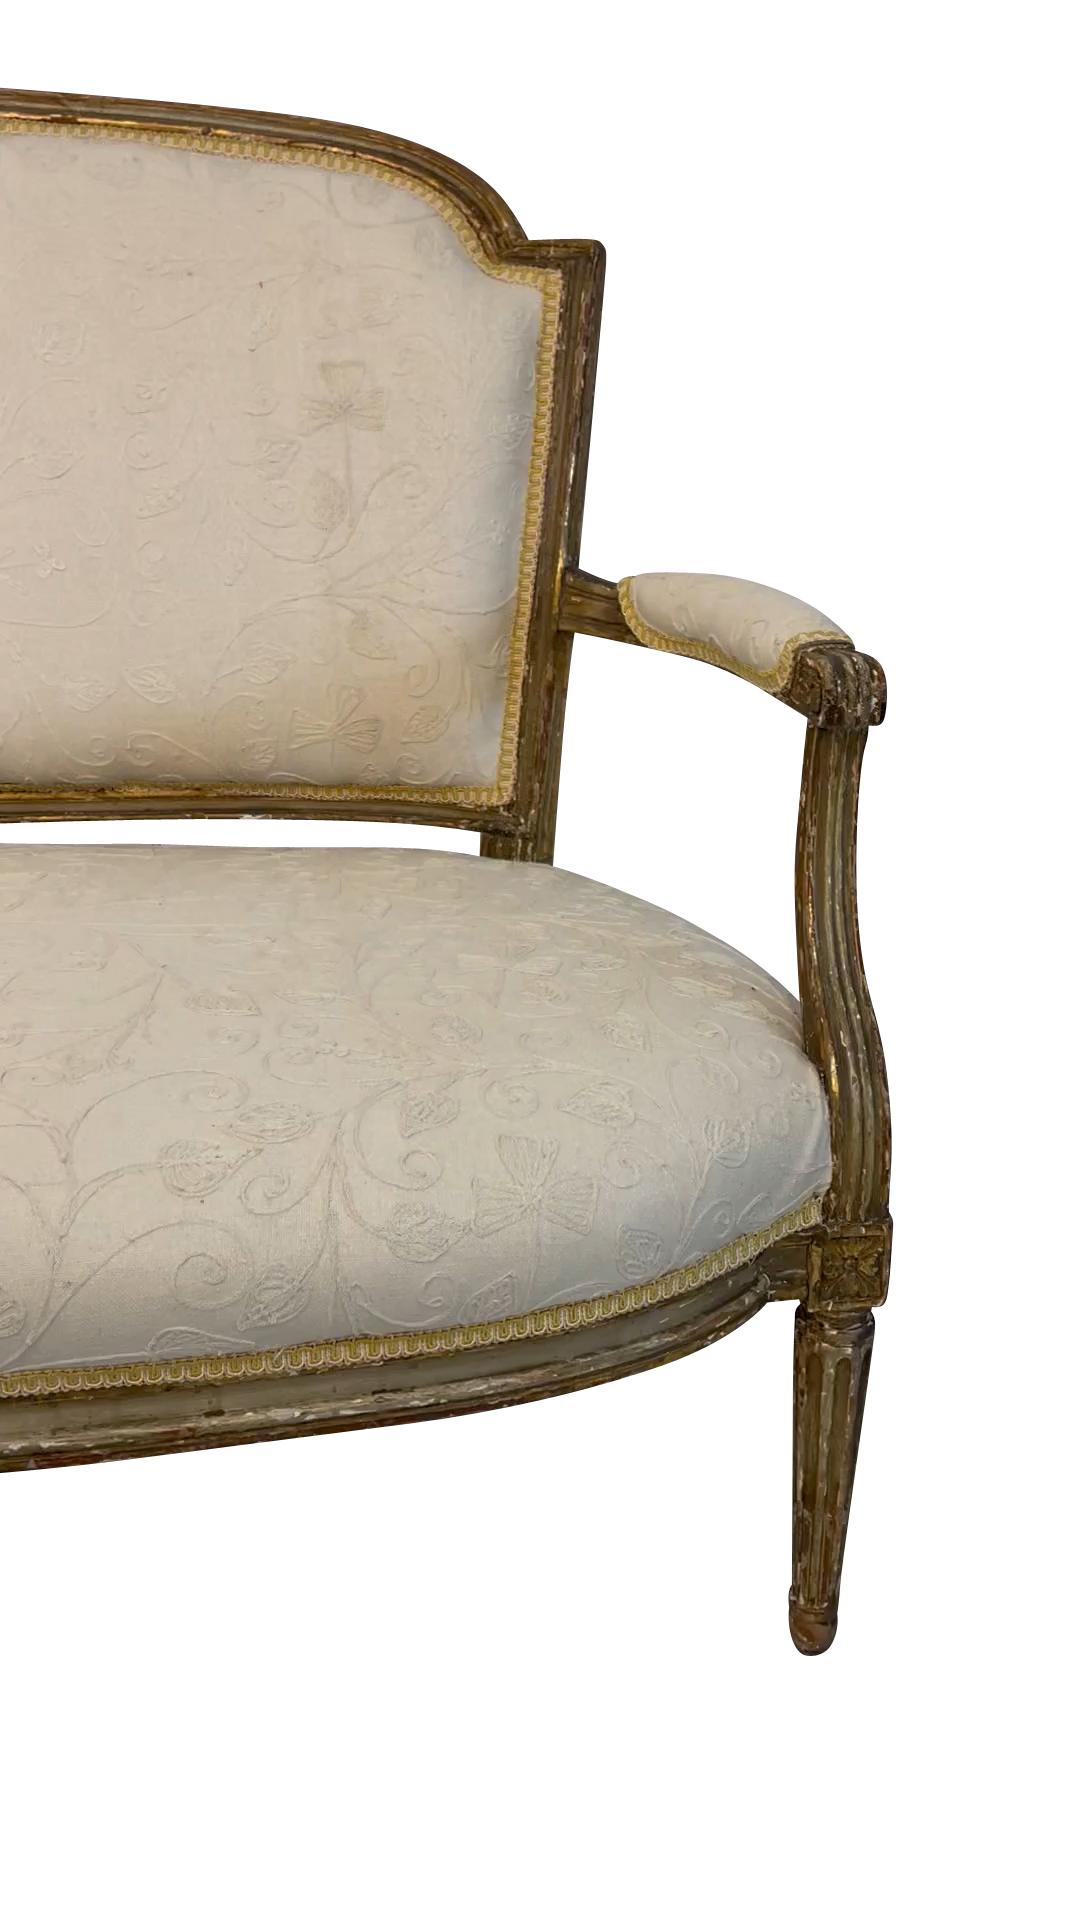 Ein klassisches Louis-XVI-Canape oder -Sofa aus vergoldetem Holz des 19. Jahrhunderts, gepolstert mit einem cremefarbenen, bestickten Stoff. Die ursprüngliche Polsterung aus Rosshaar ist unter dem neuen Stoff erhalten geblieben. 36 H X 54,5 B X 20 T 